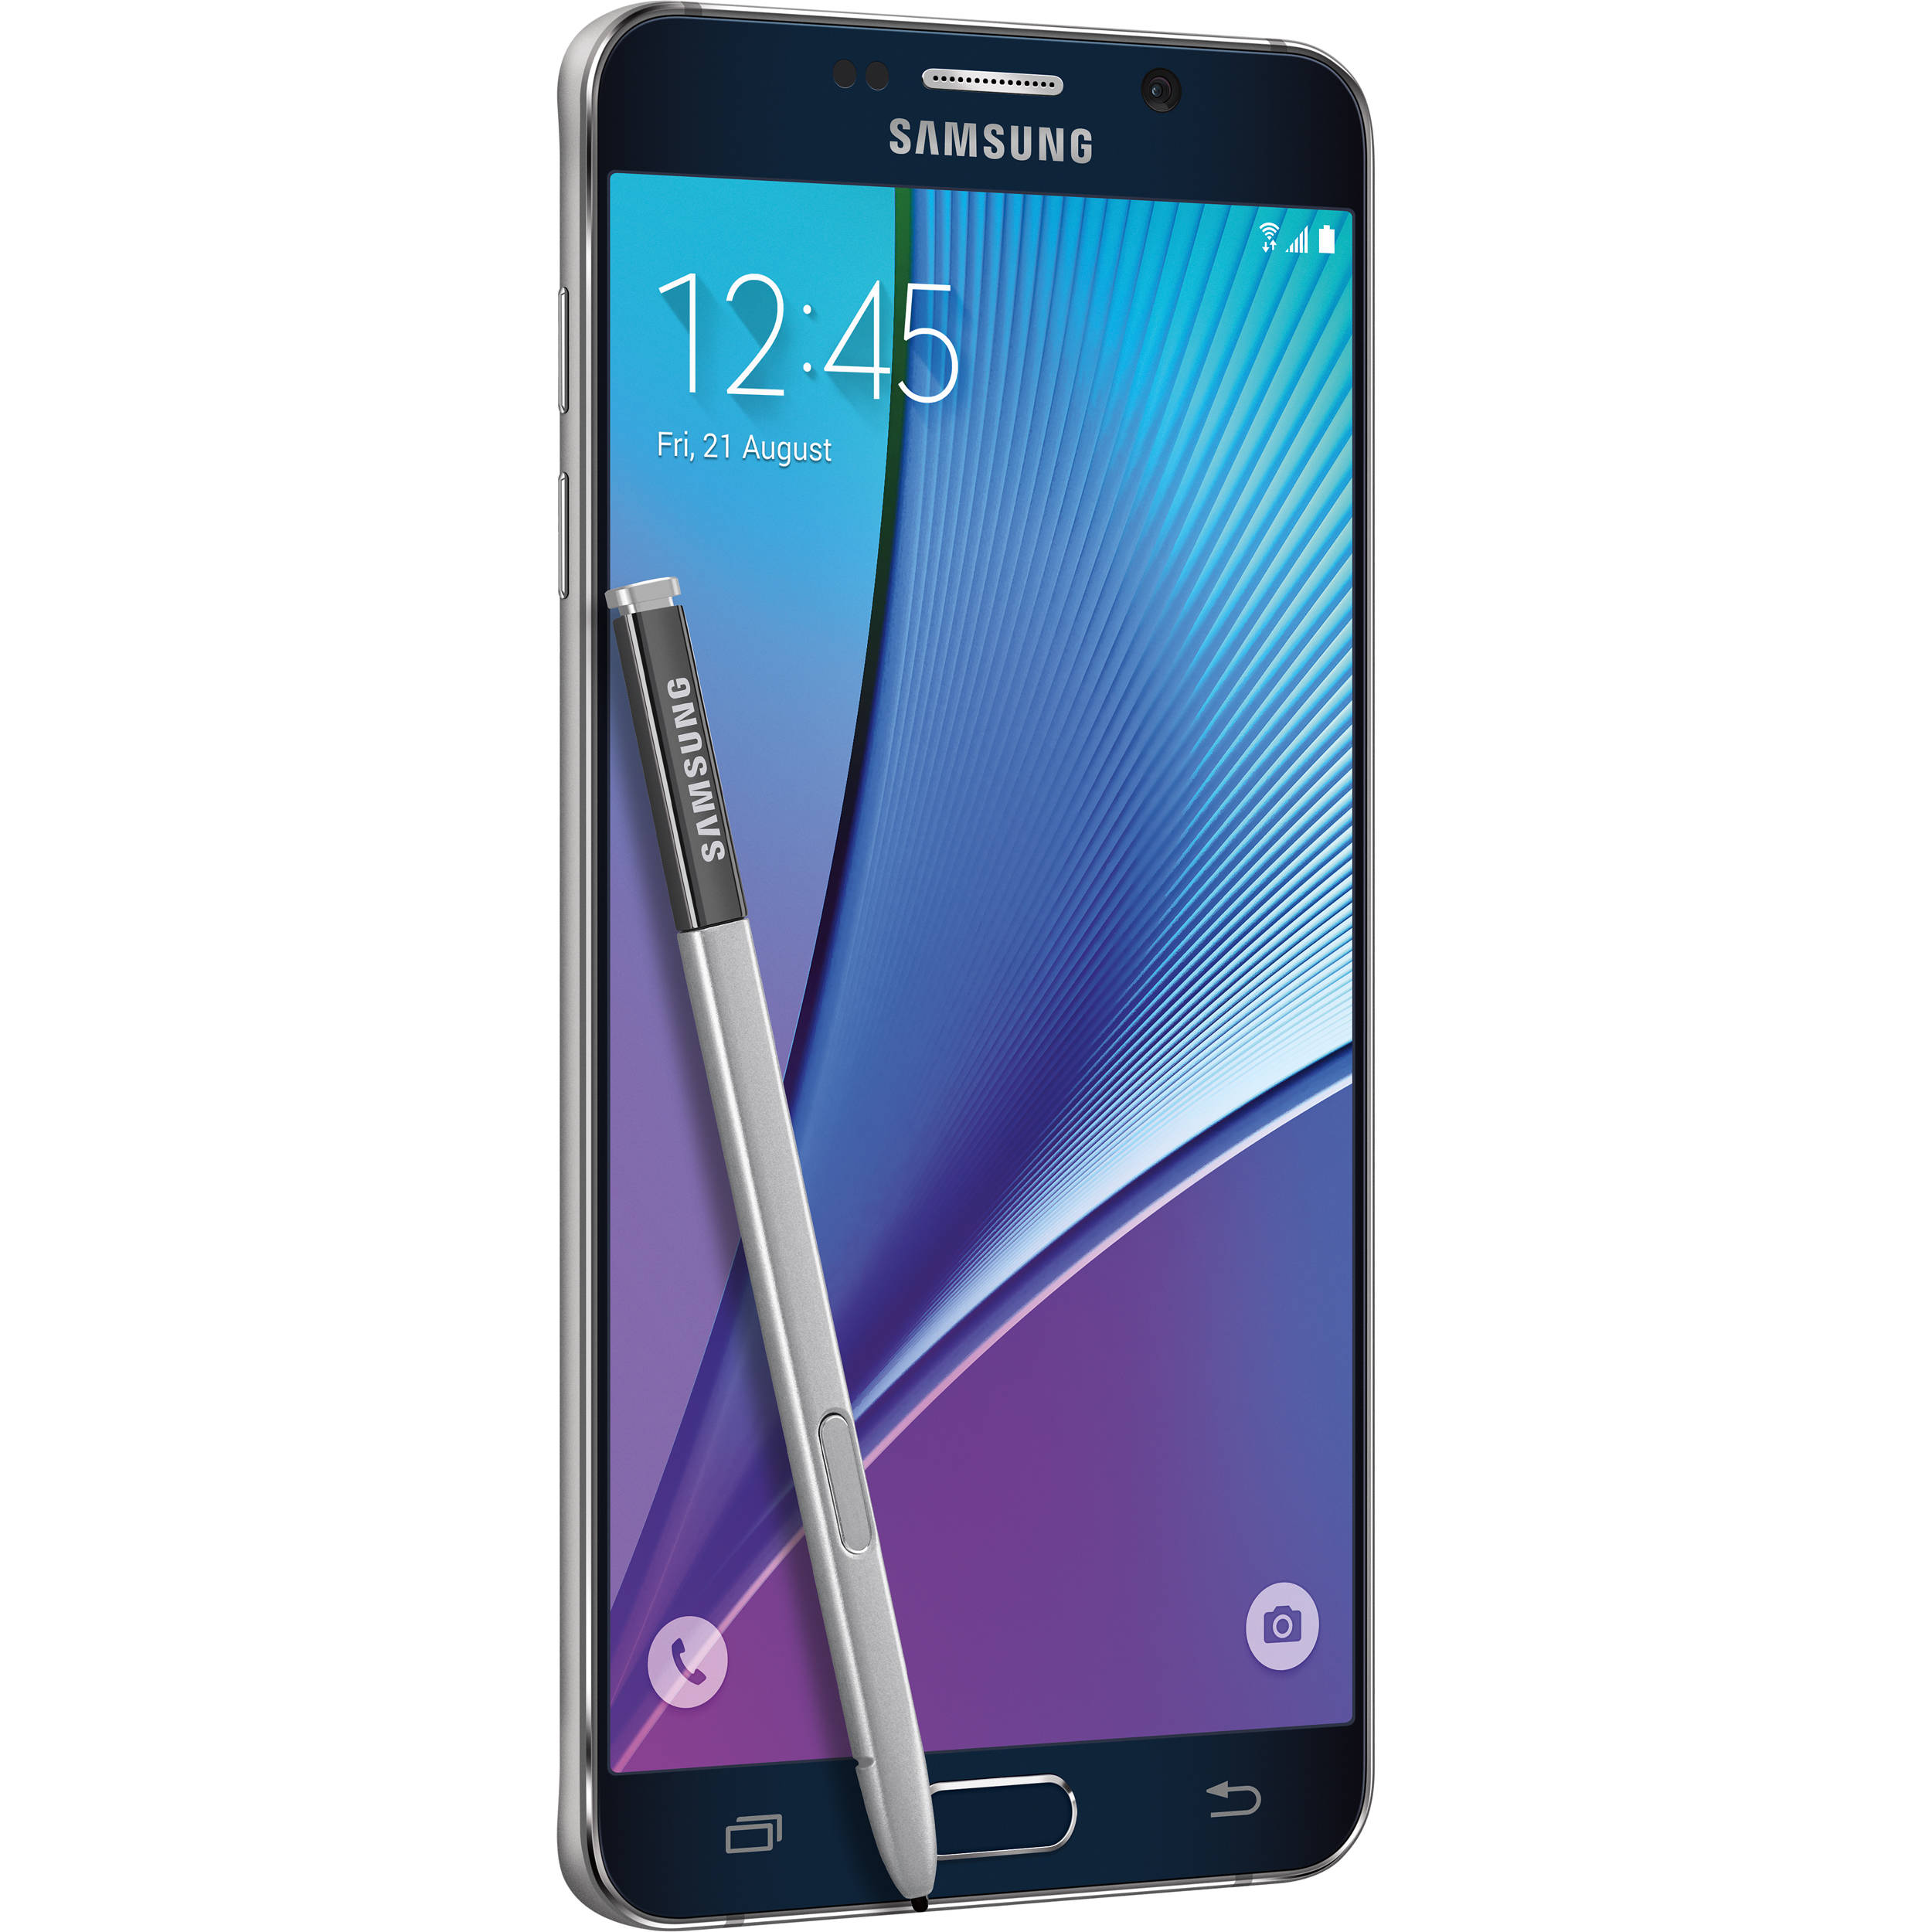 Samsung Galaxy Note 5 Sm N920i 32gb Sm N920i 32gb Black B H